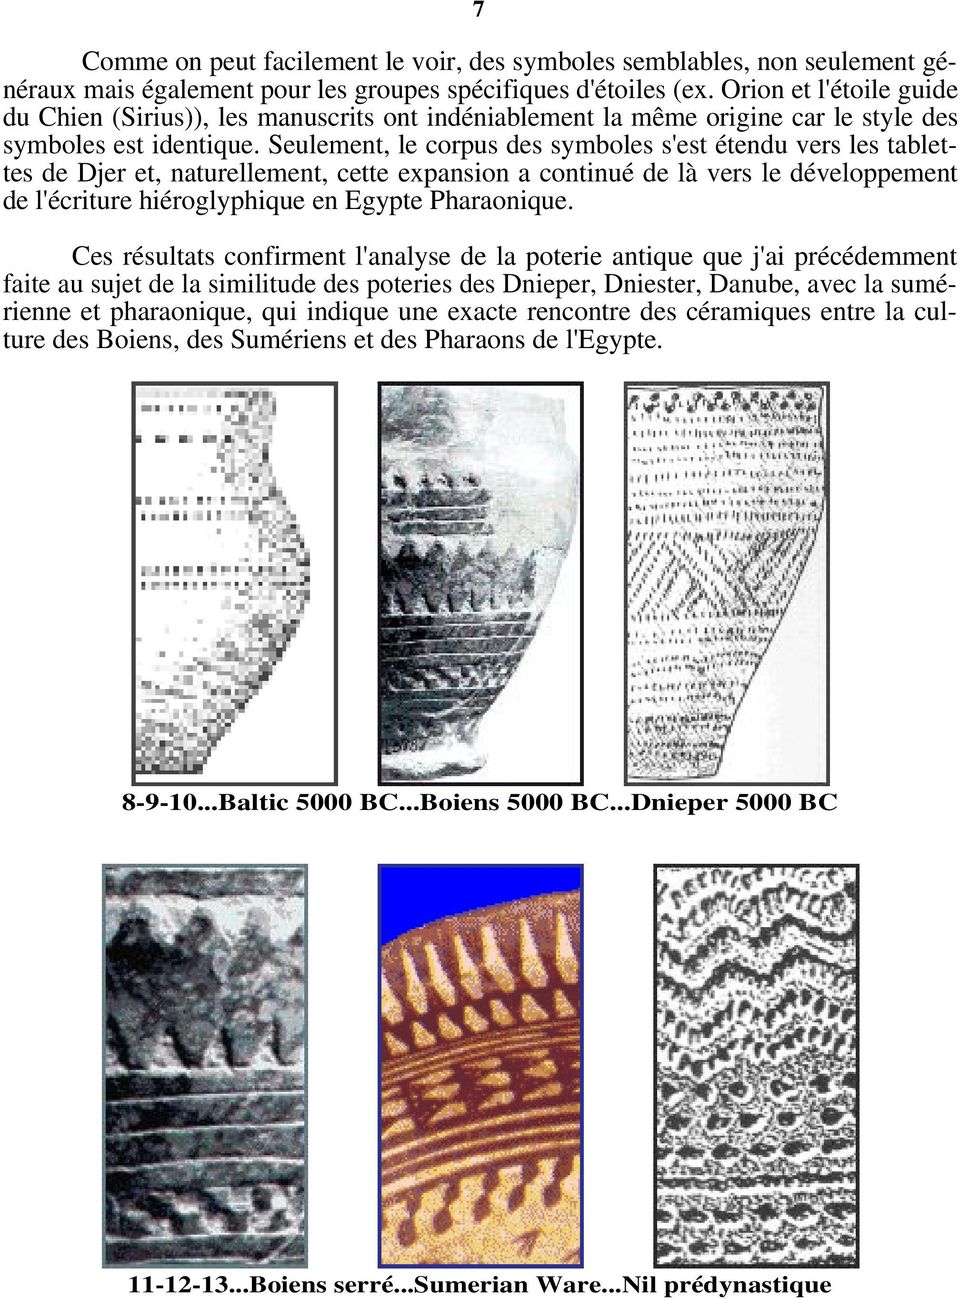 Seulement, le corpus des symboles s'est étendu vers les tablettes de Djer et, naturellement, cette expansion a continué de là vers le développement de l'écriture hiéroglyphique en Egypte Pharaonique.